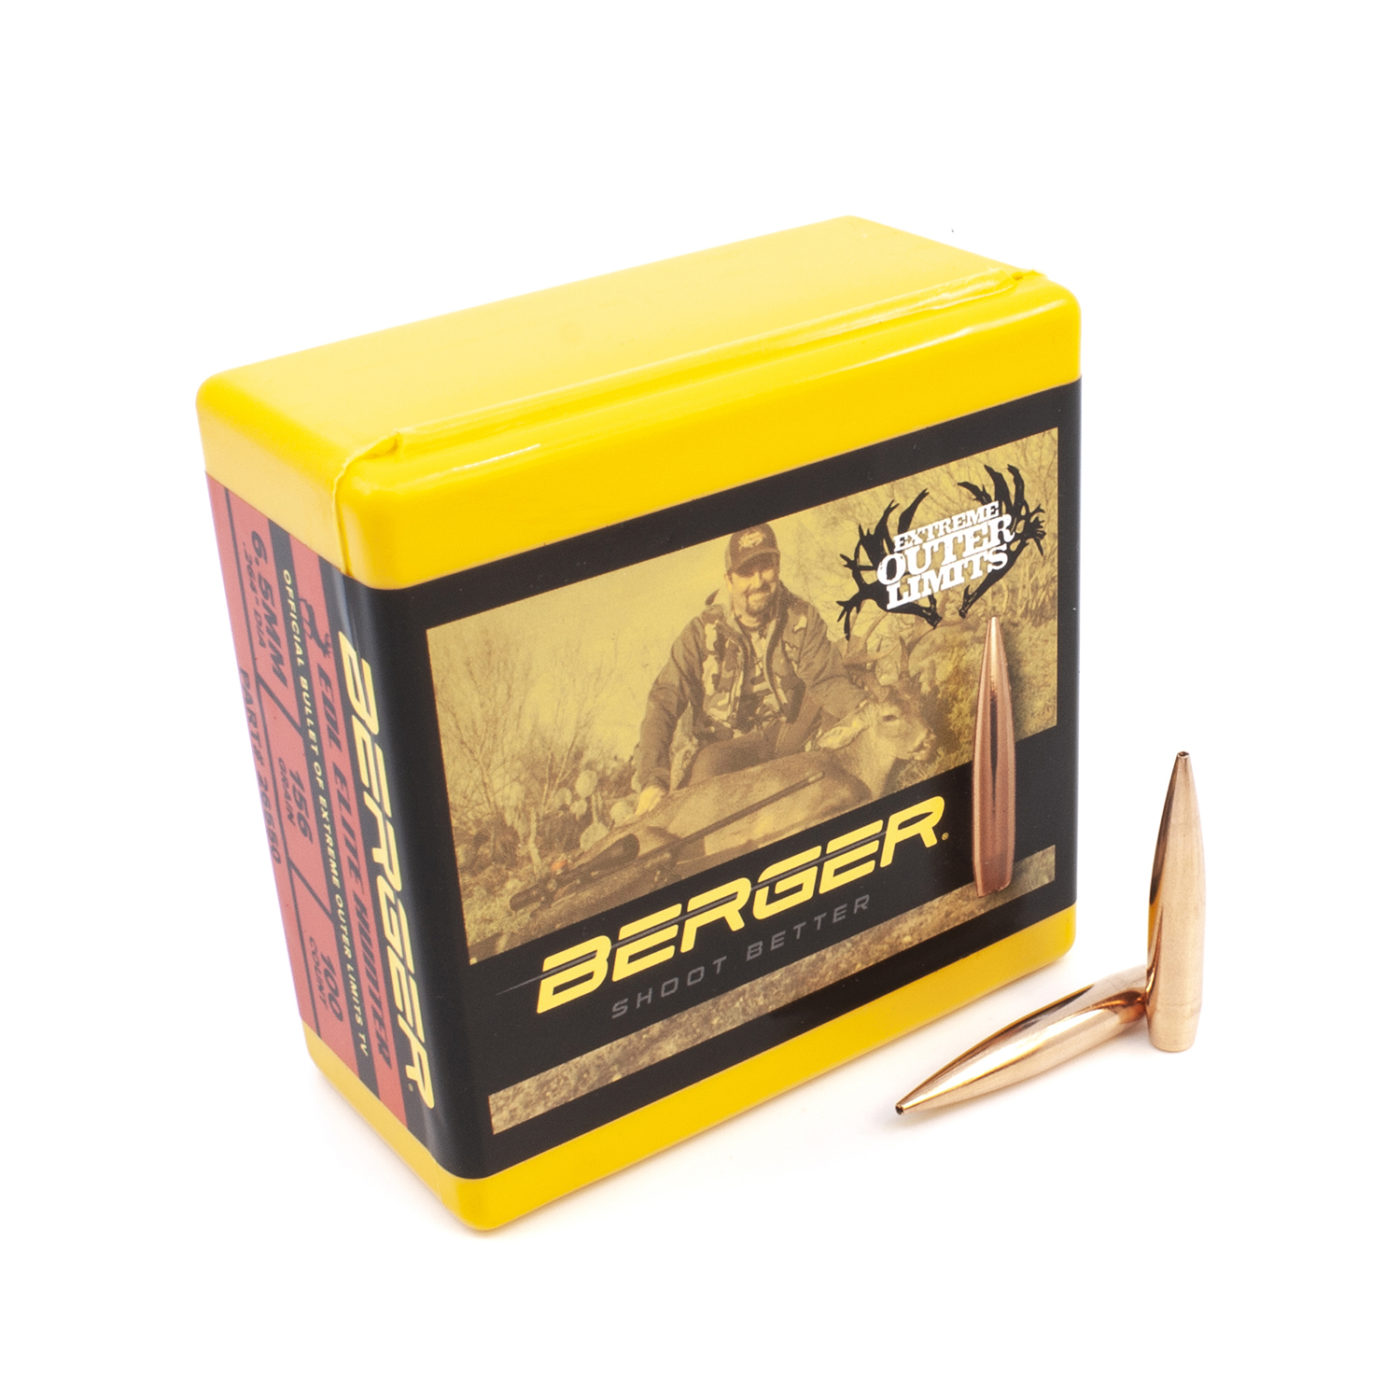 6.5mm 156gr EOL Elite Hunter bullet box